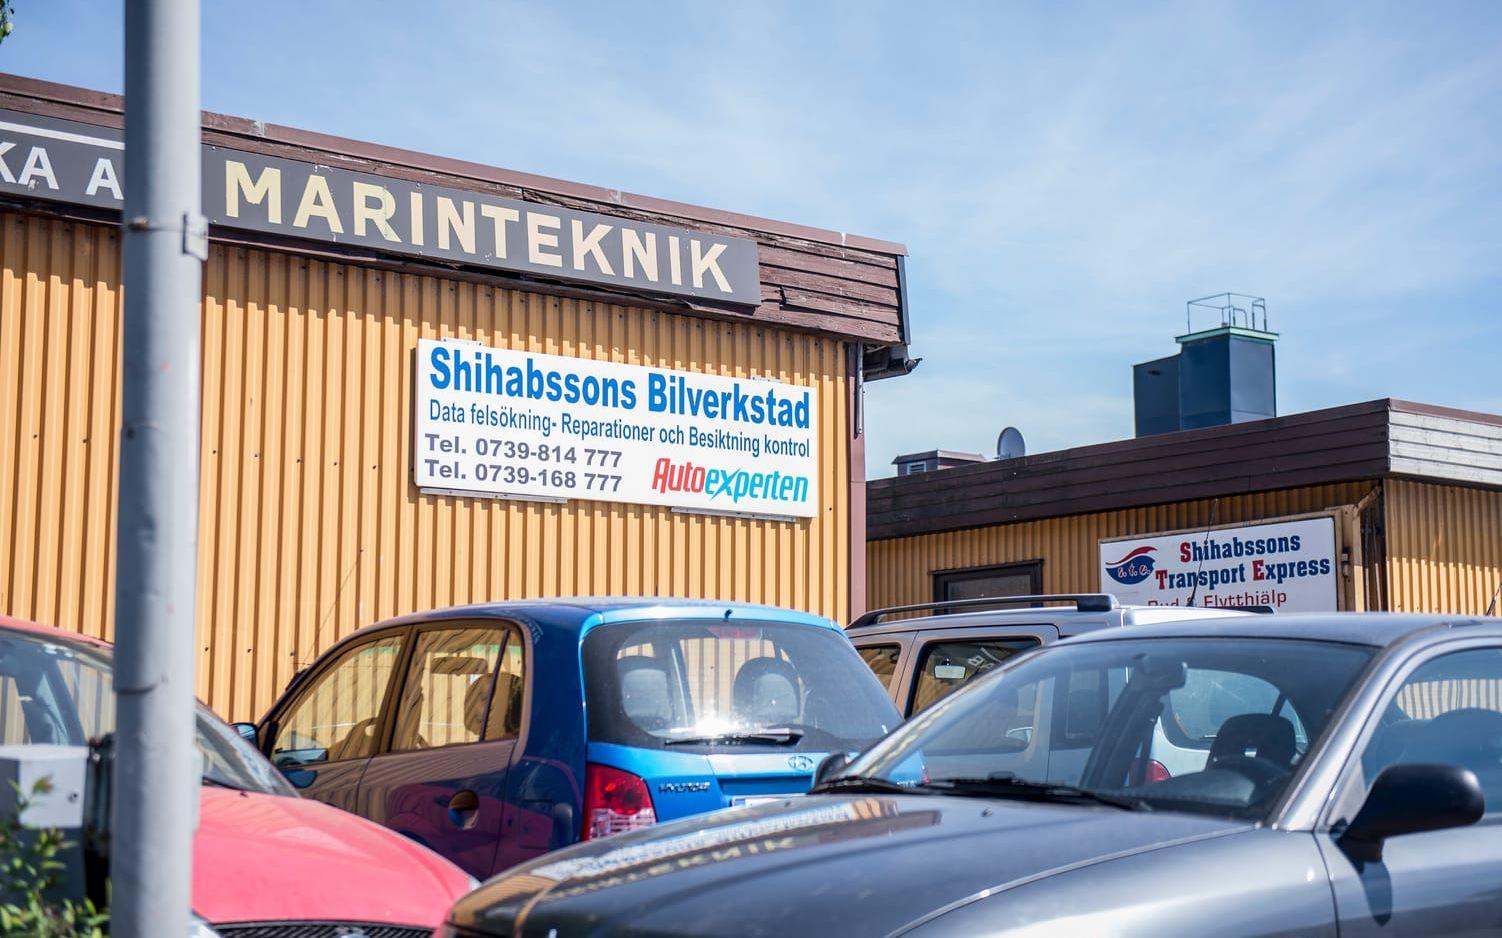 Shibabssons bilverkstad. Idag är Ringön full av småföretagare. Foto: Hannes Ojensa